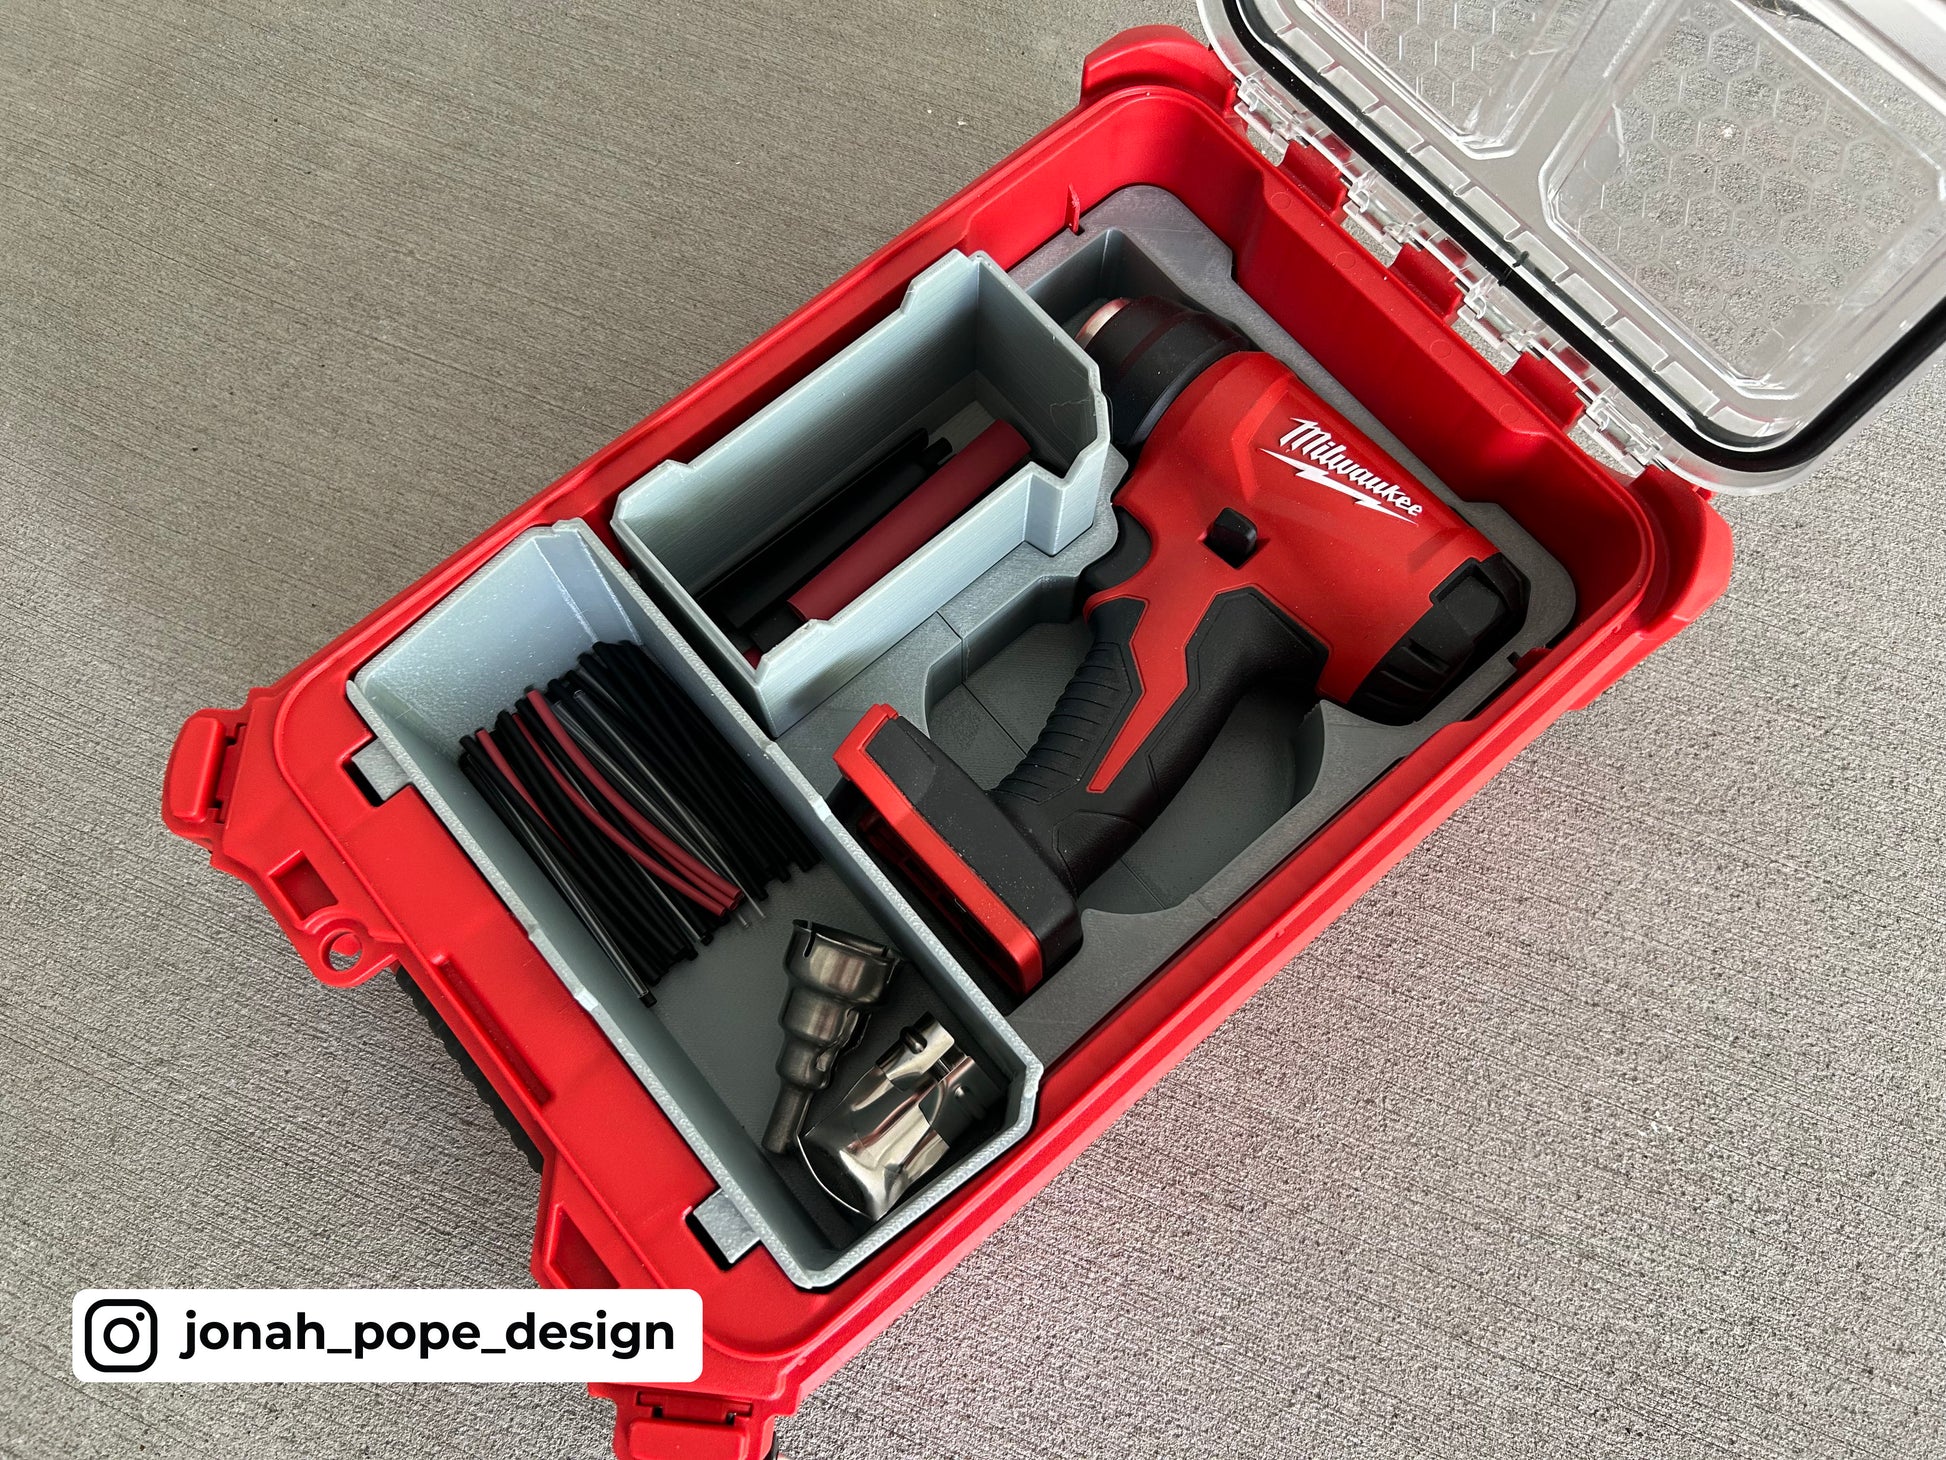 Packout Insert For M18 Heat Gun - Jonah Pope Design (JP-HG) – 10